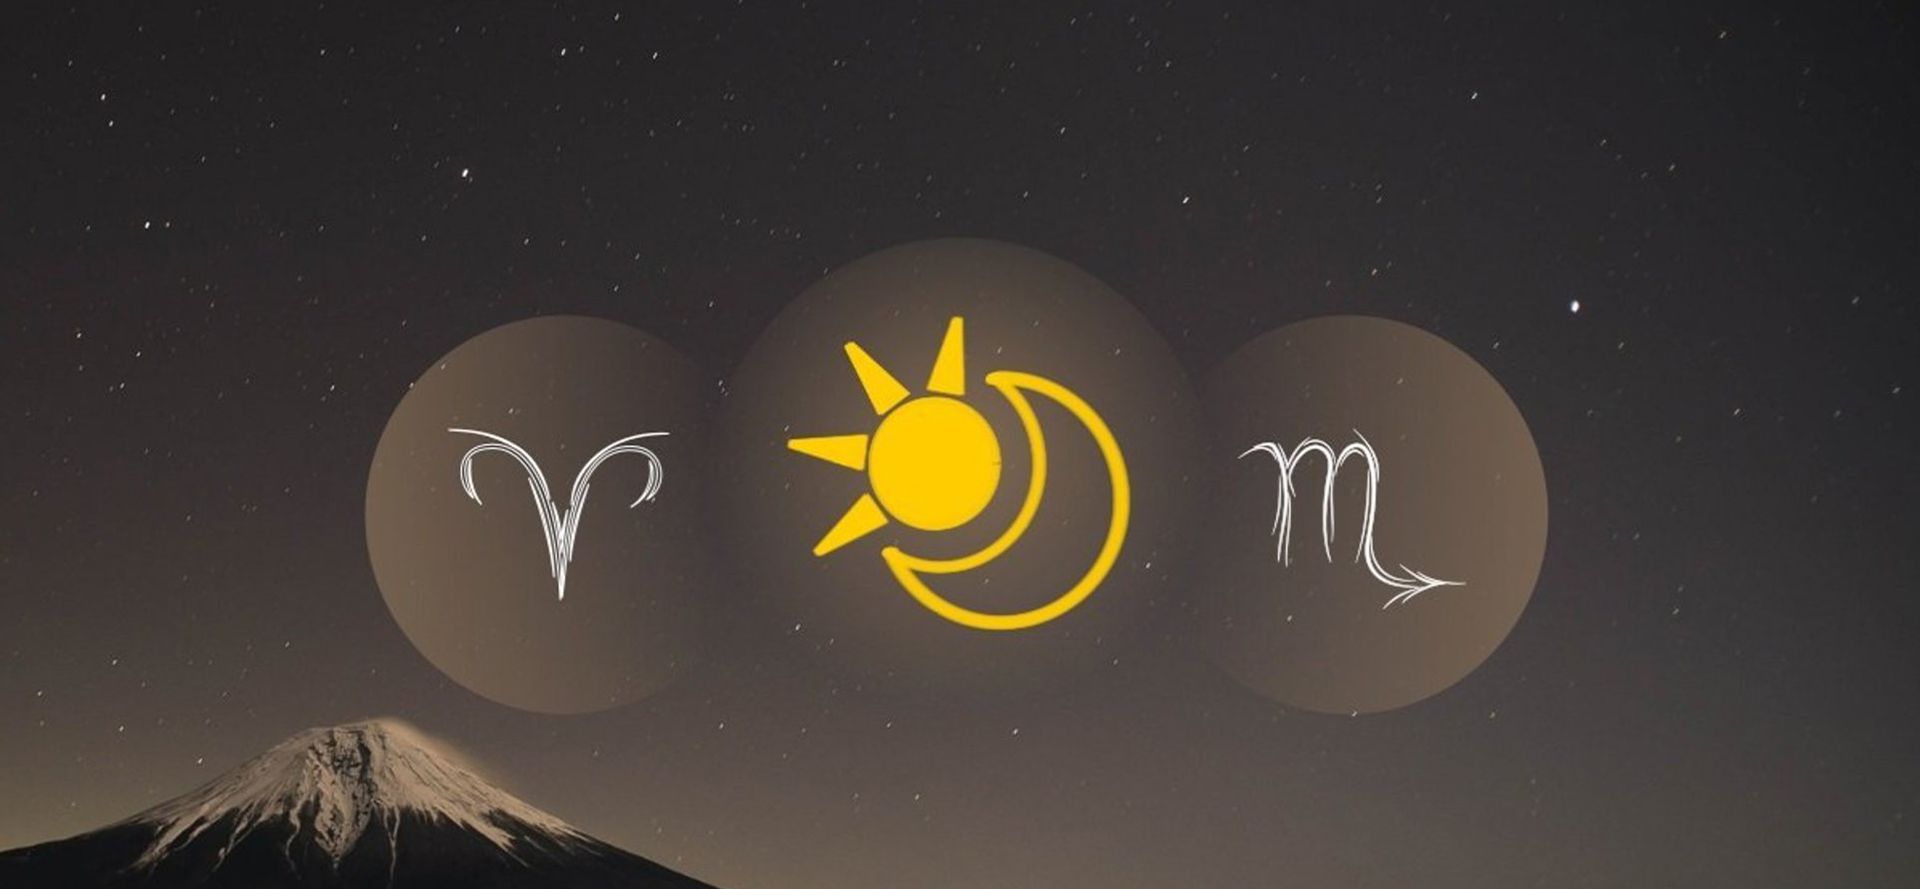 Aries Sun Scorpio Moon.